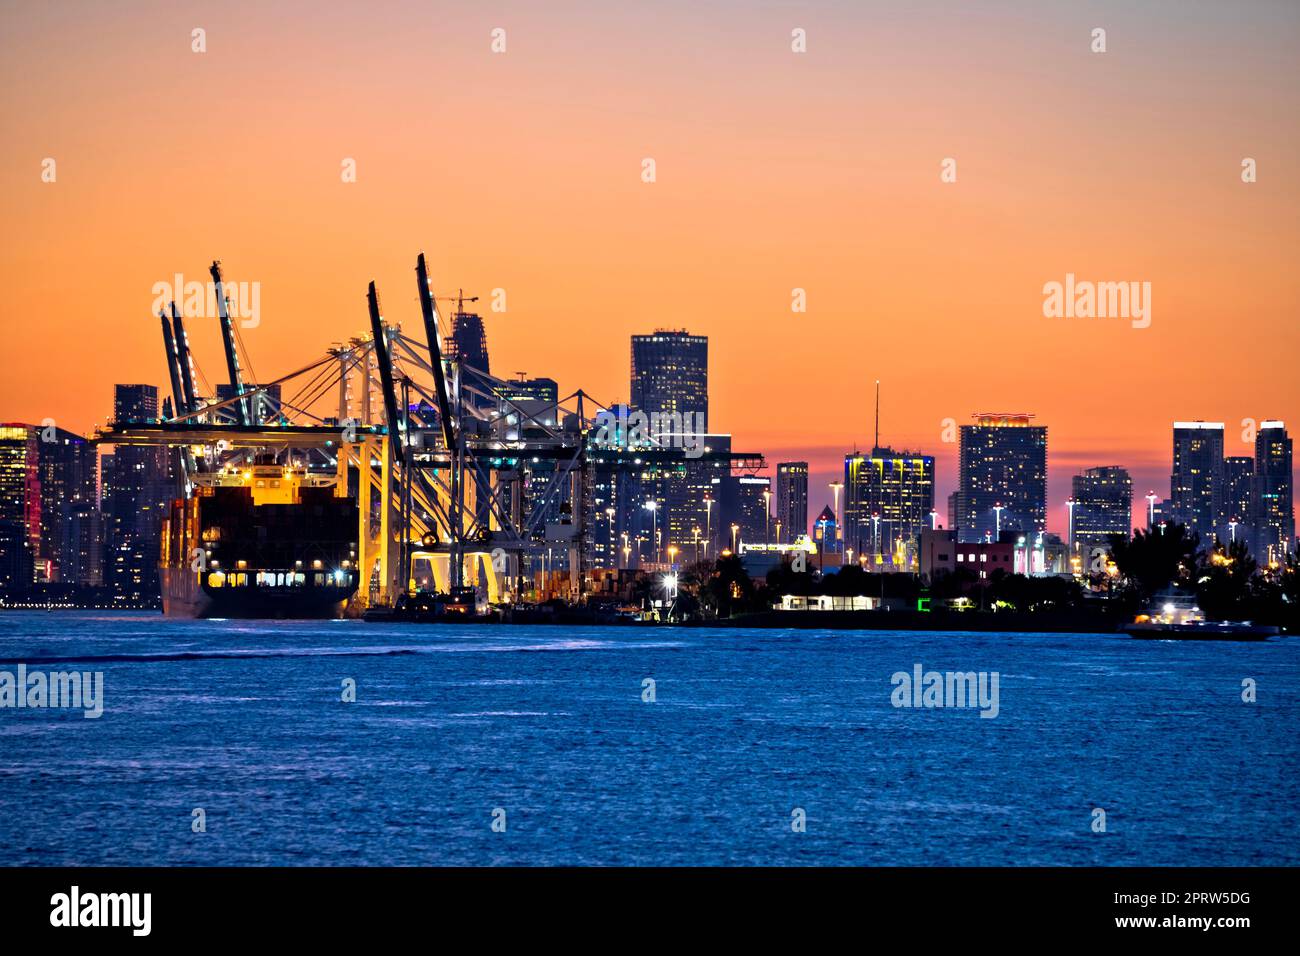 Vue sur les quais et les grues du port de Miami au crépuscule Banque D'Images